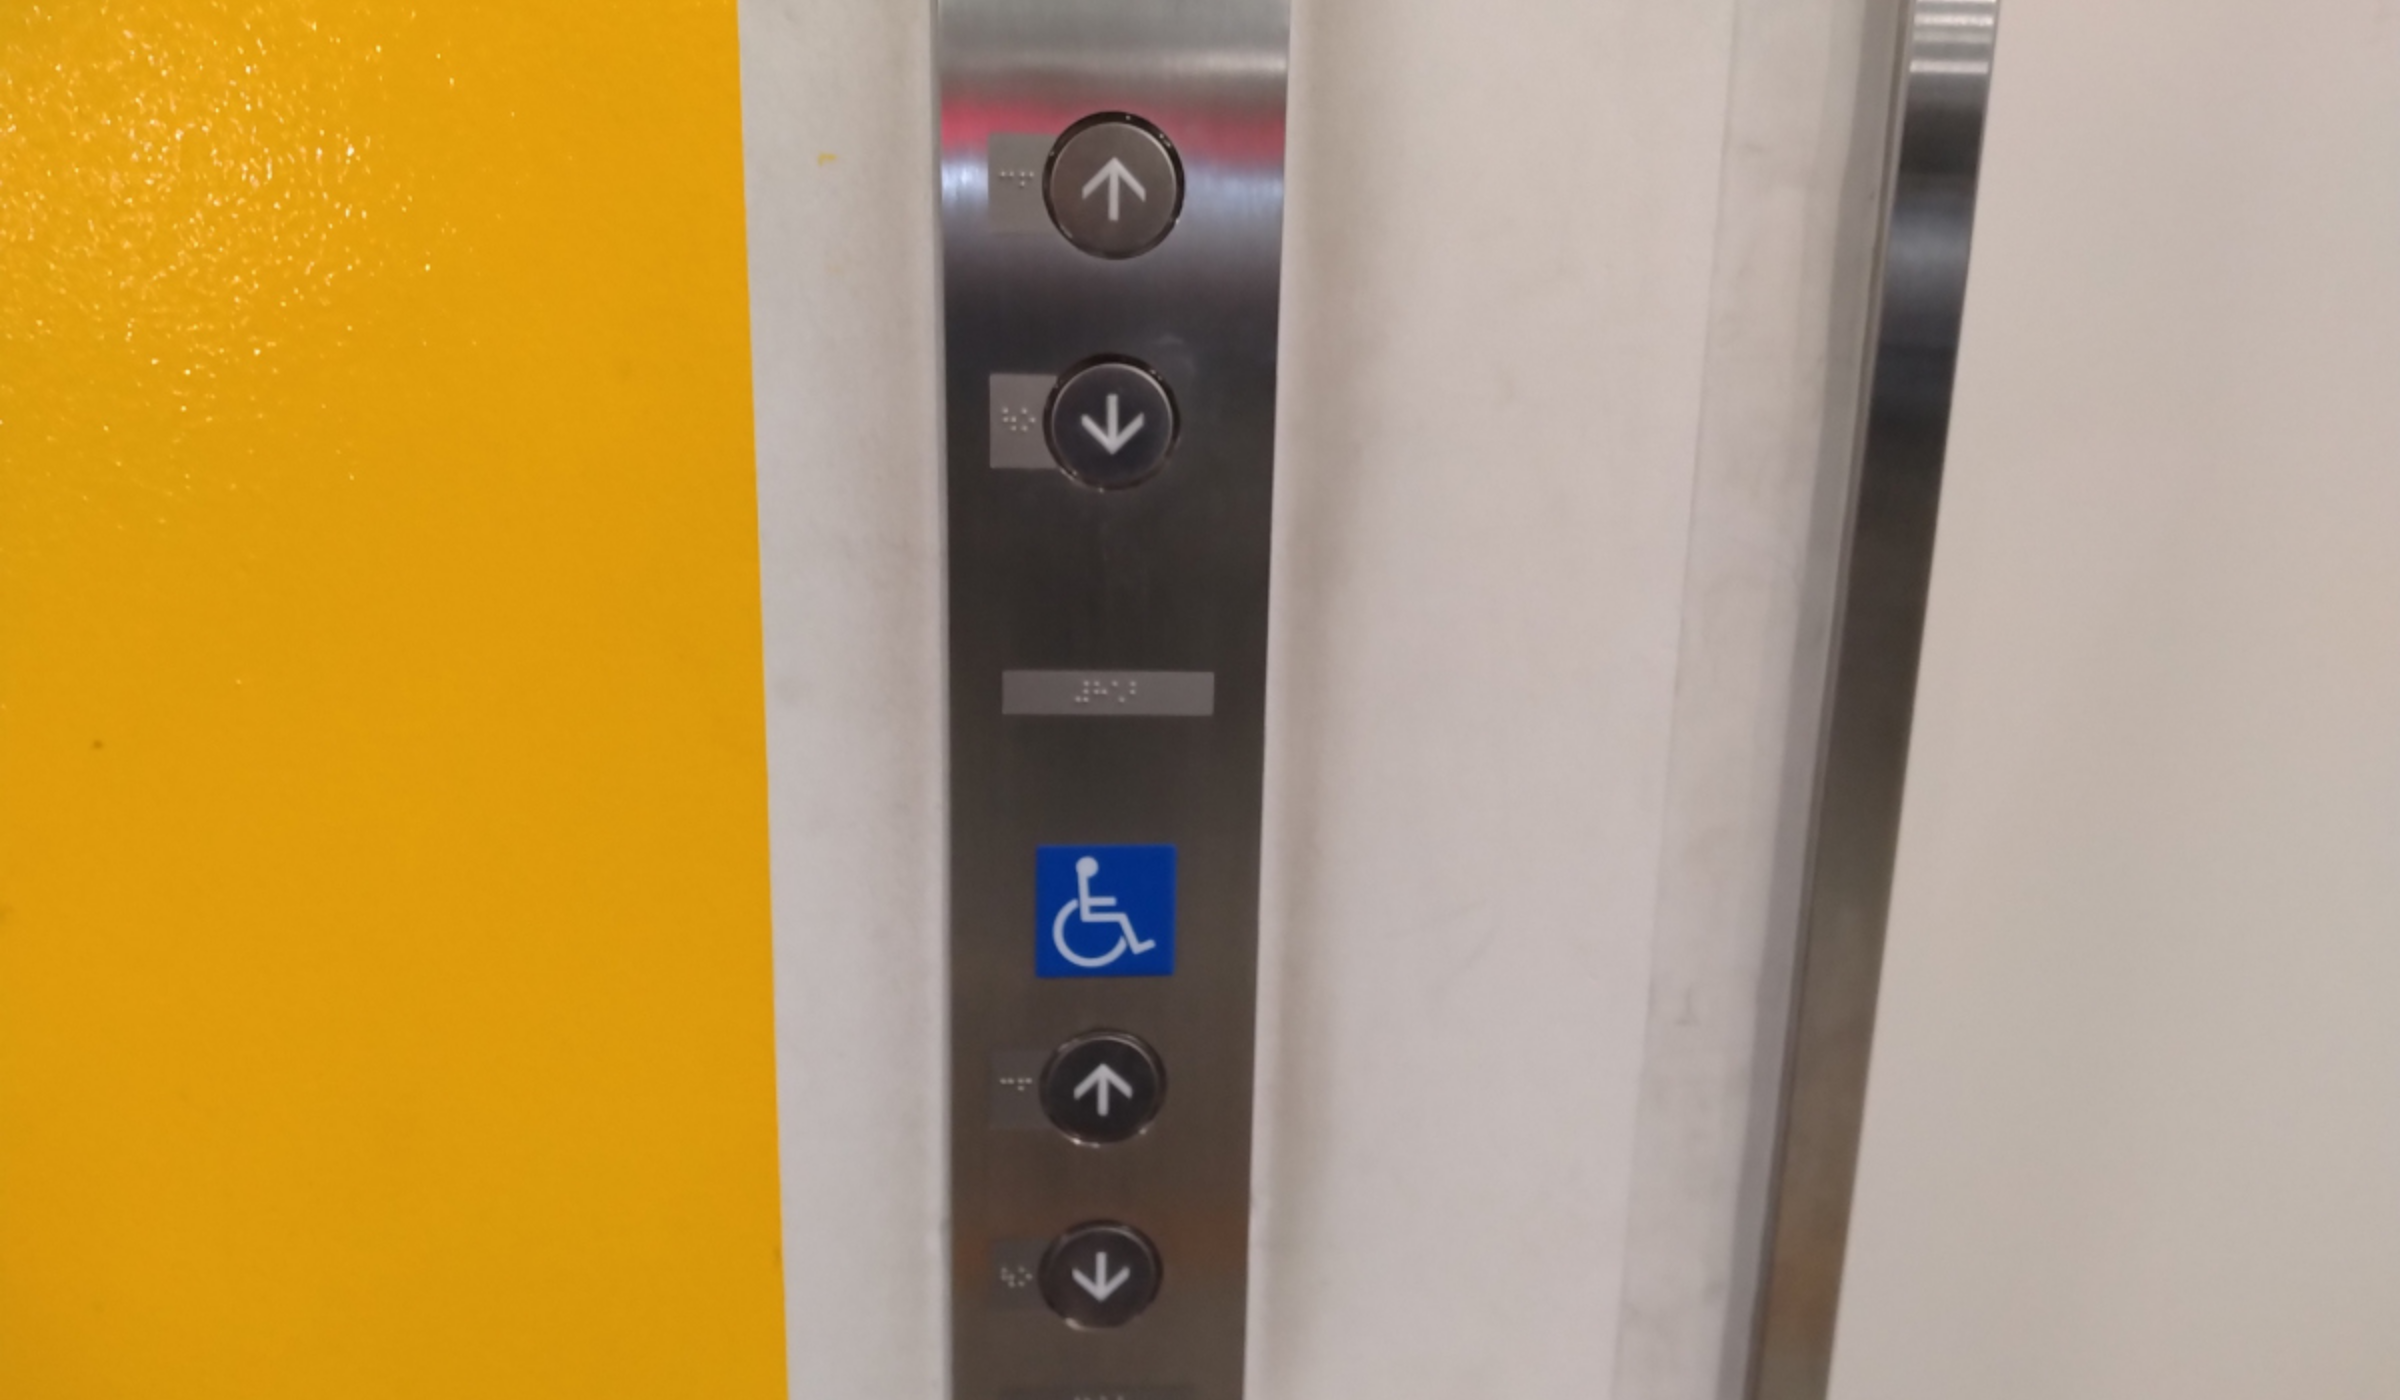 エレベーター呼び出しボタン